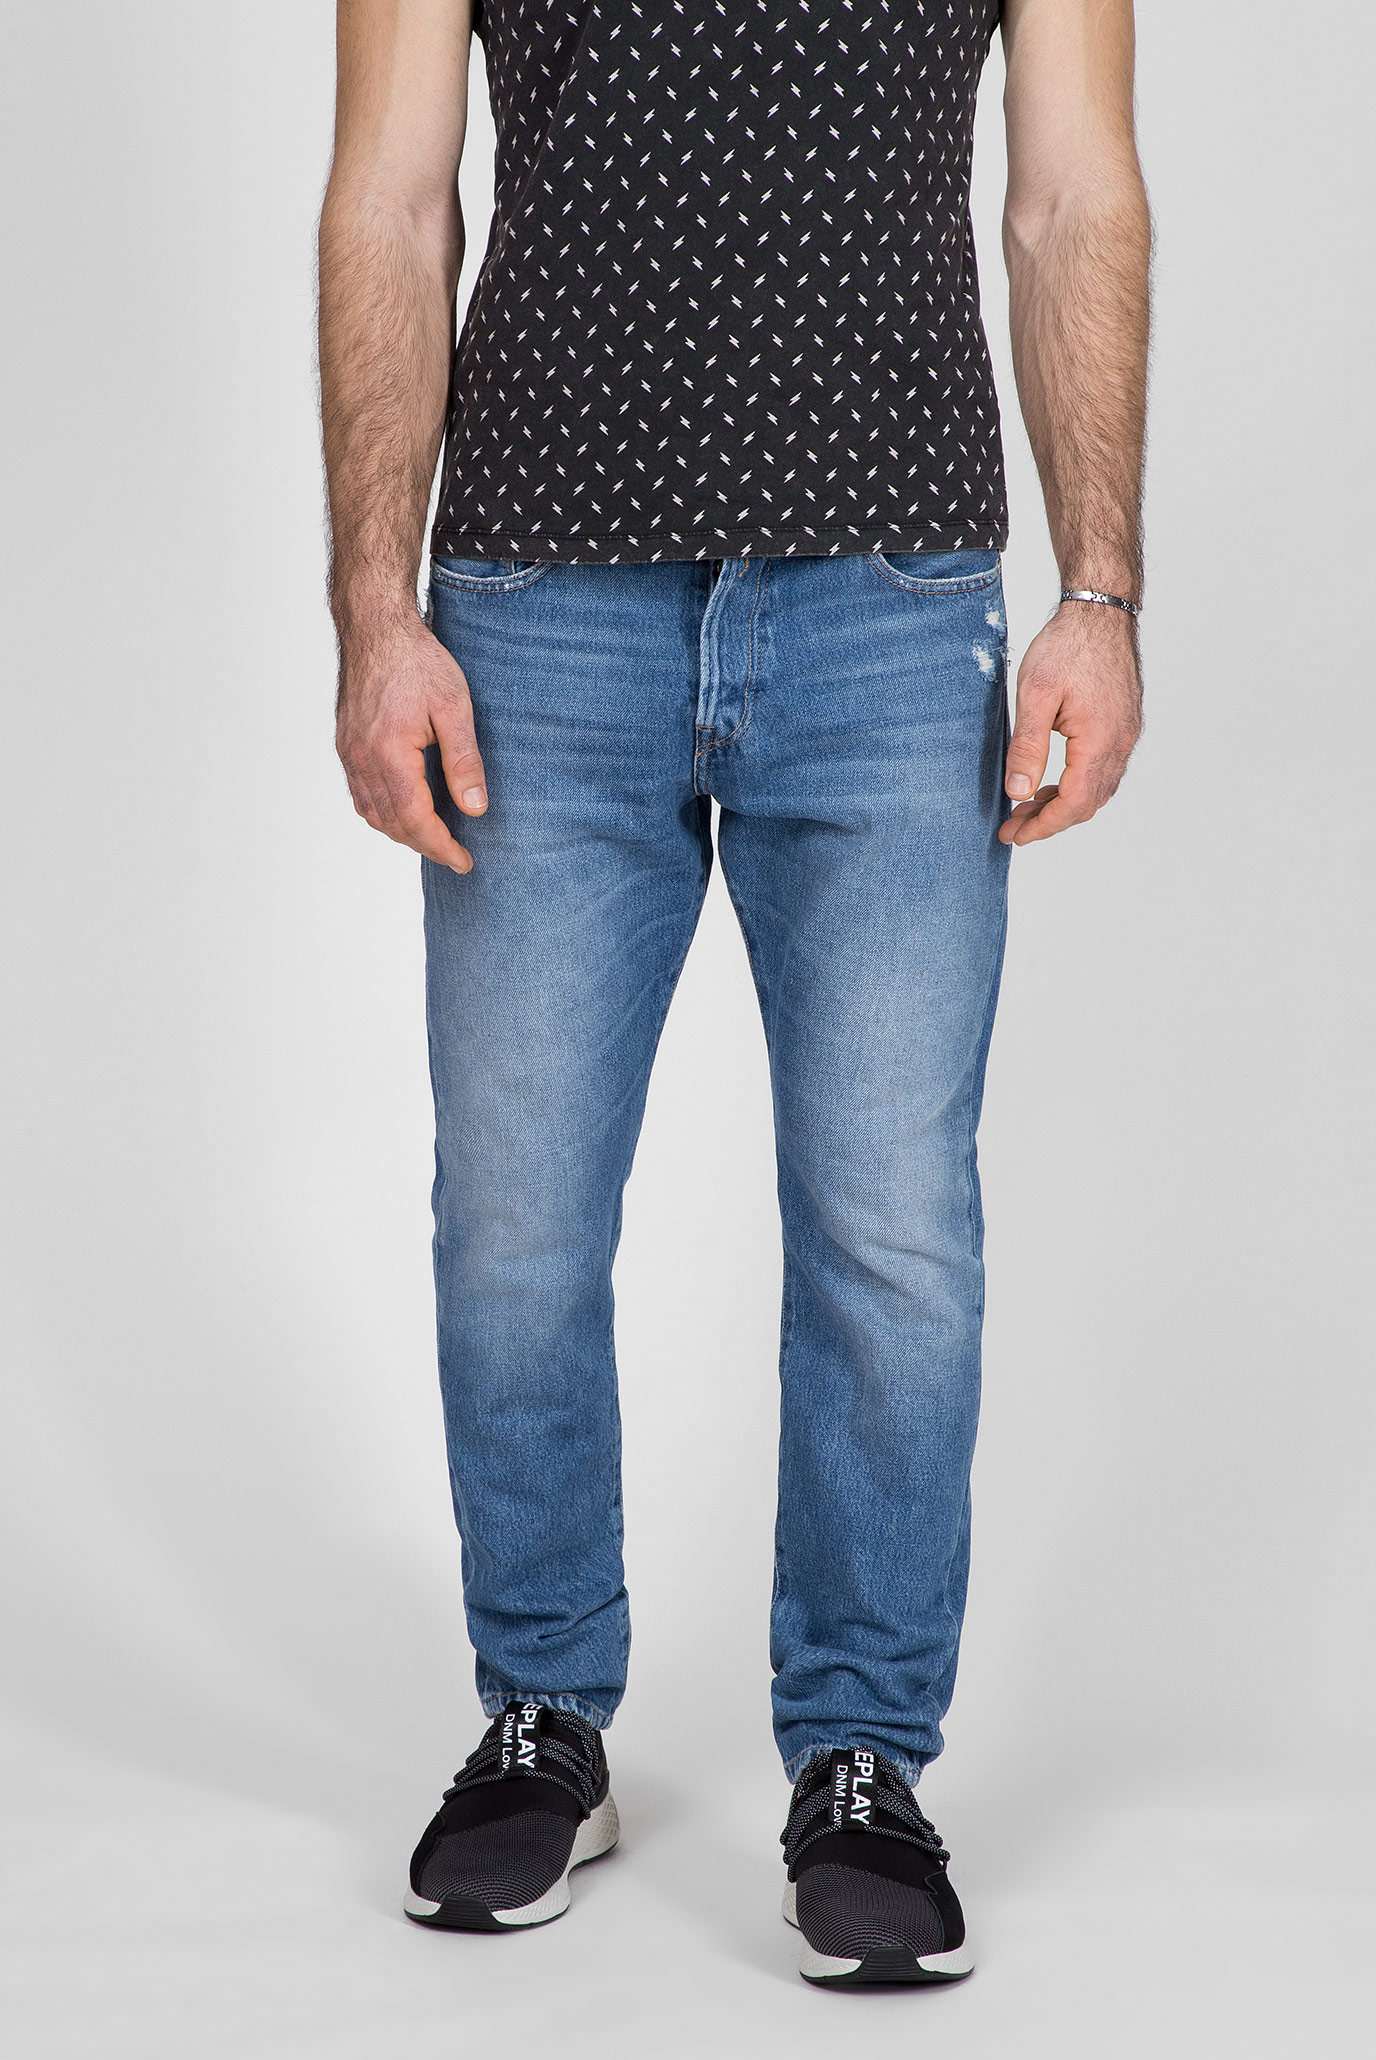 Чоловічі сині джинси TINMAR 1